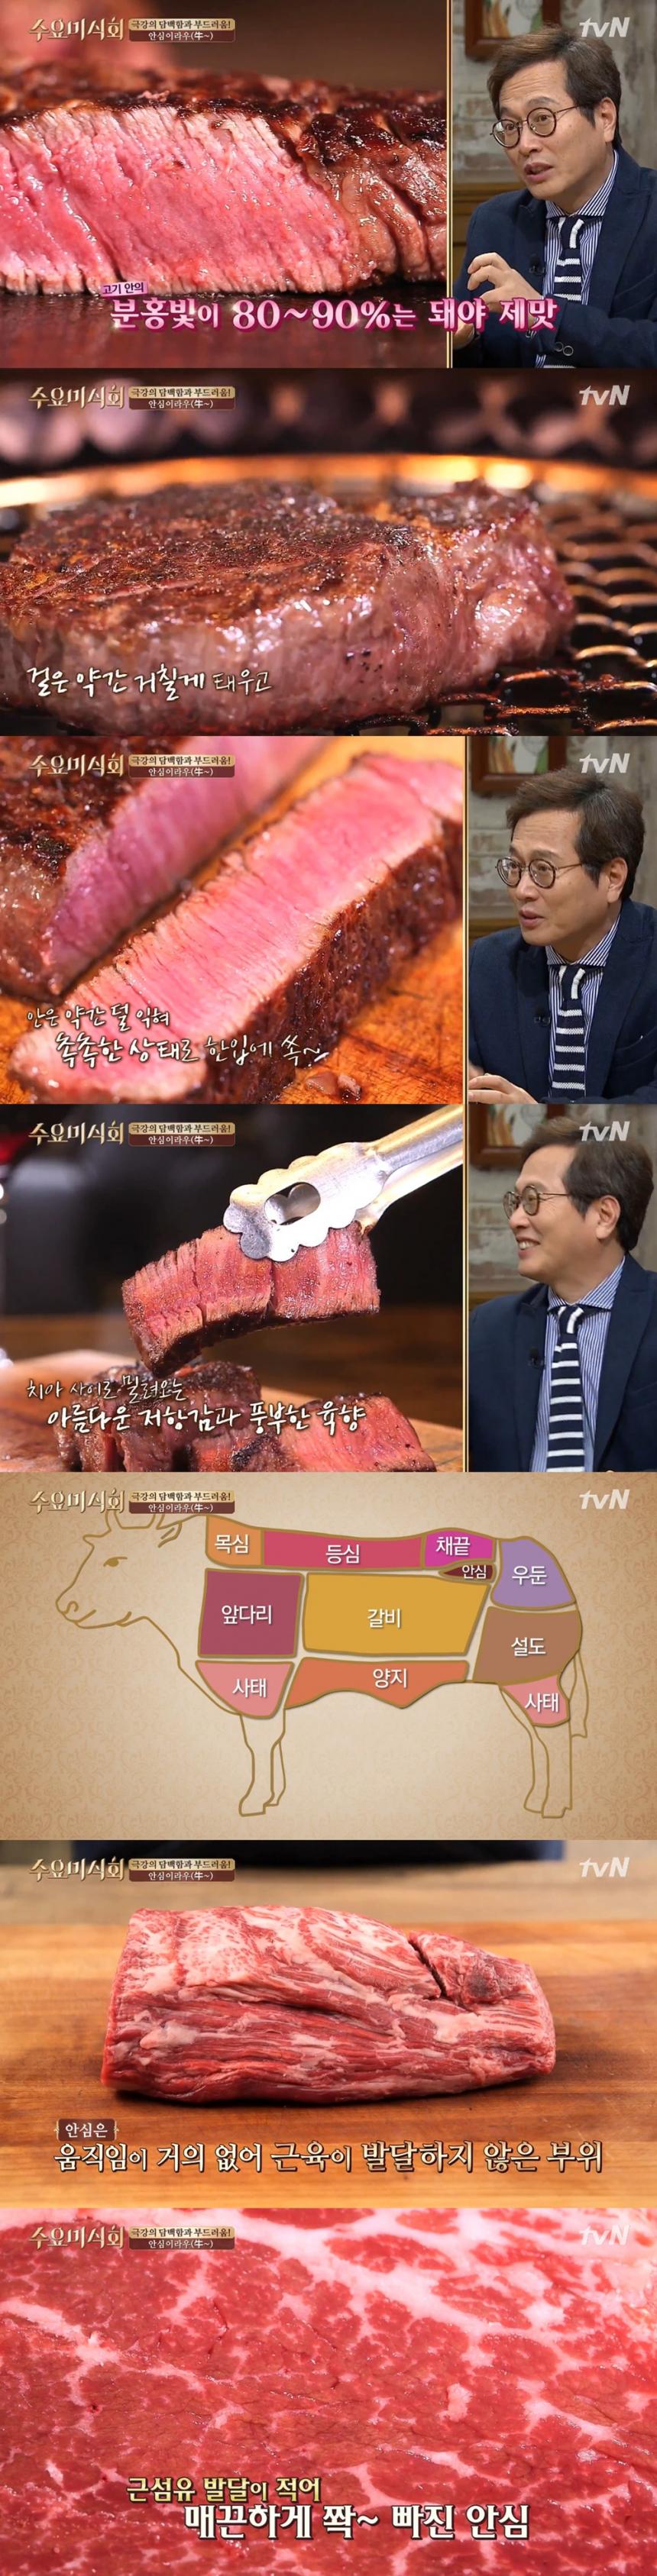 안심 / tvN ‘수요미식회’ 방송 캡처